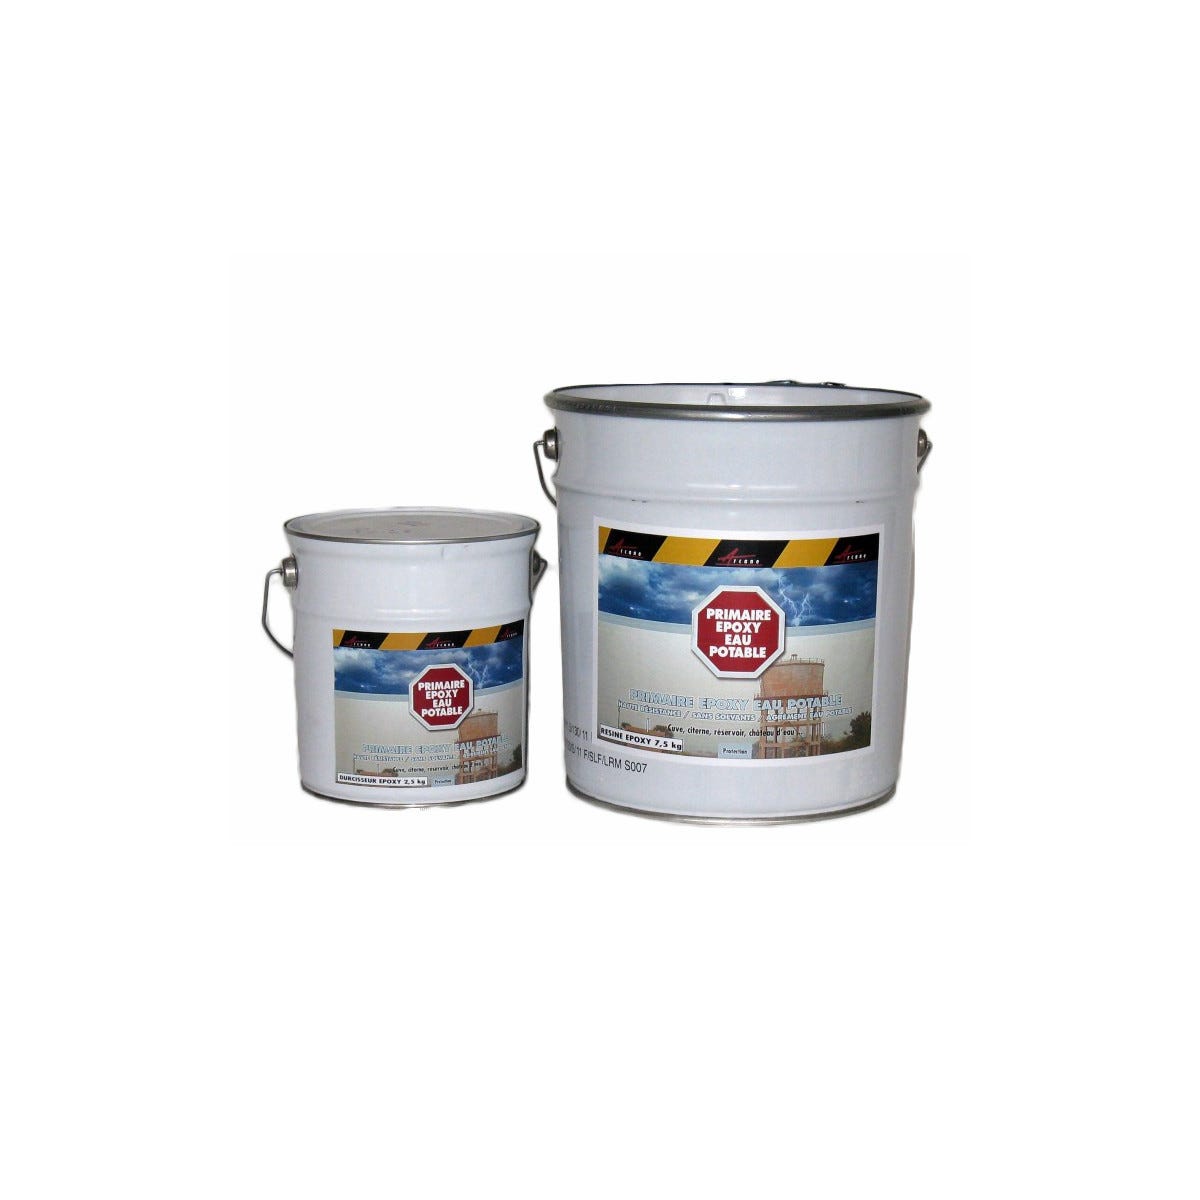 Primaire epoxy pour eau potable - PRIMAIRE EPOXY EAU POTABLE - 10 kg - Incolore - ARCANE INDUSTRIES 2